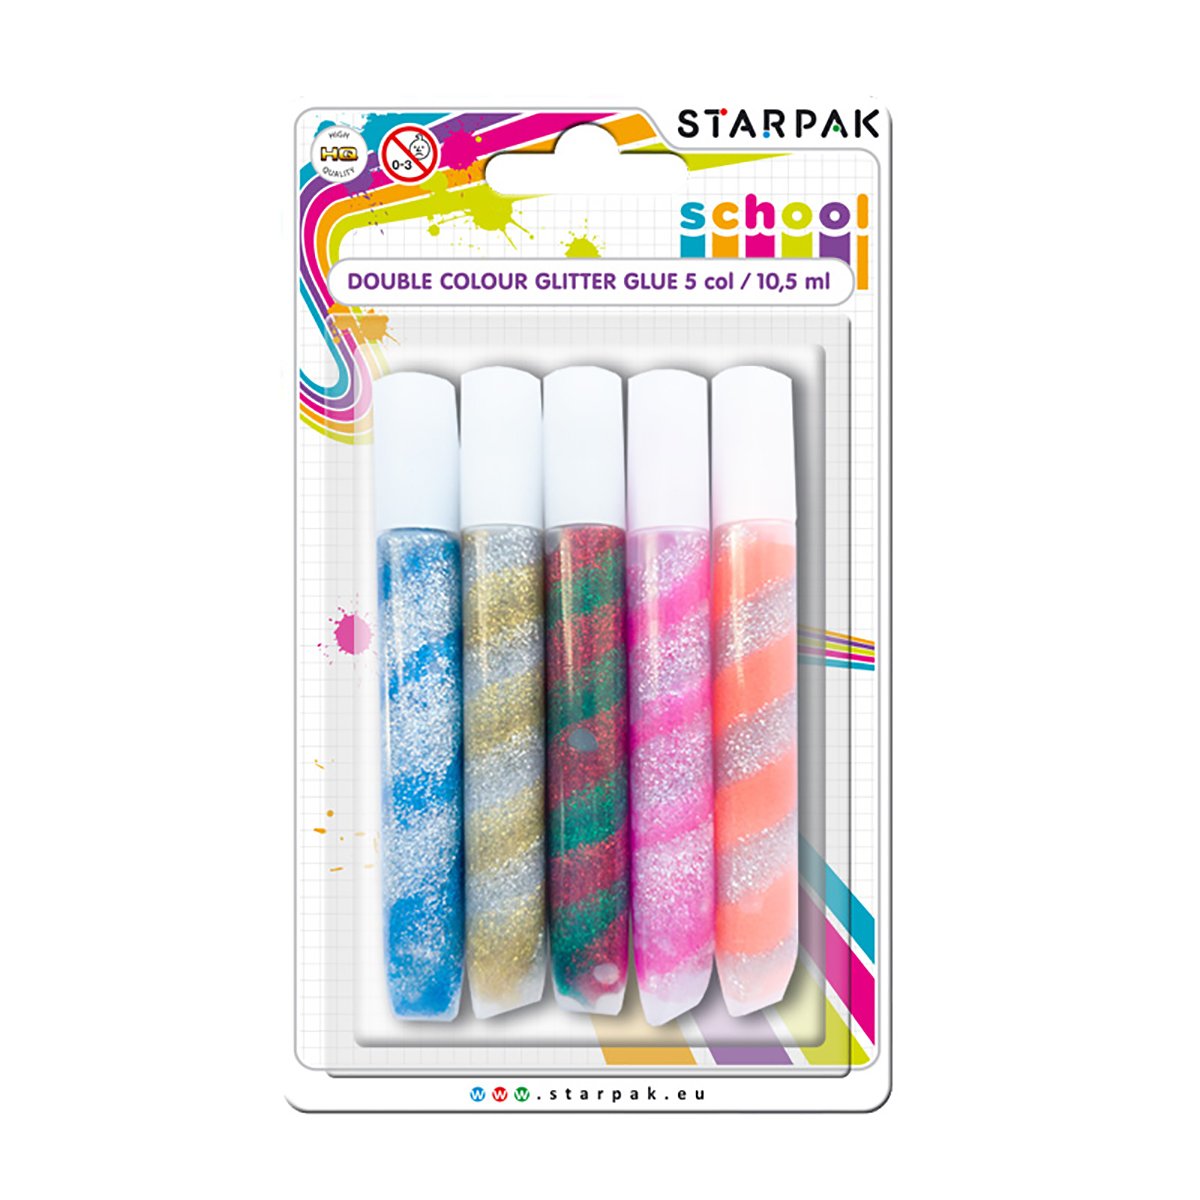 Lipici cu glitter in doua culori Starpak, 10.5 ml 10.5 imagine 2022 protejamcopilaria.ro